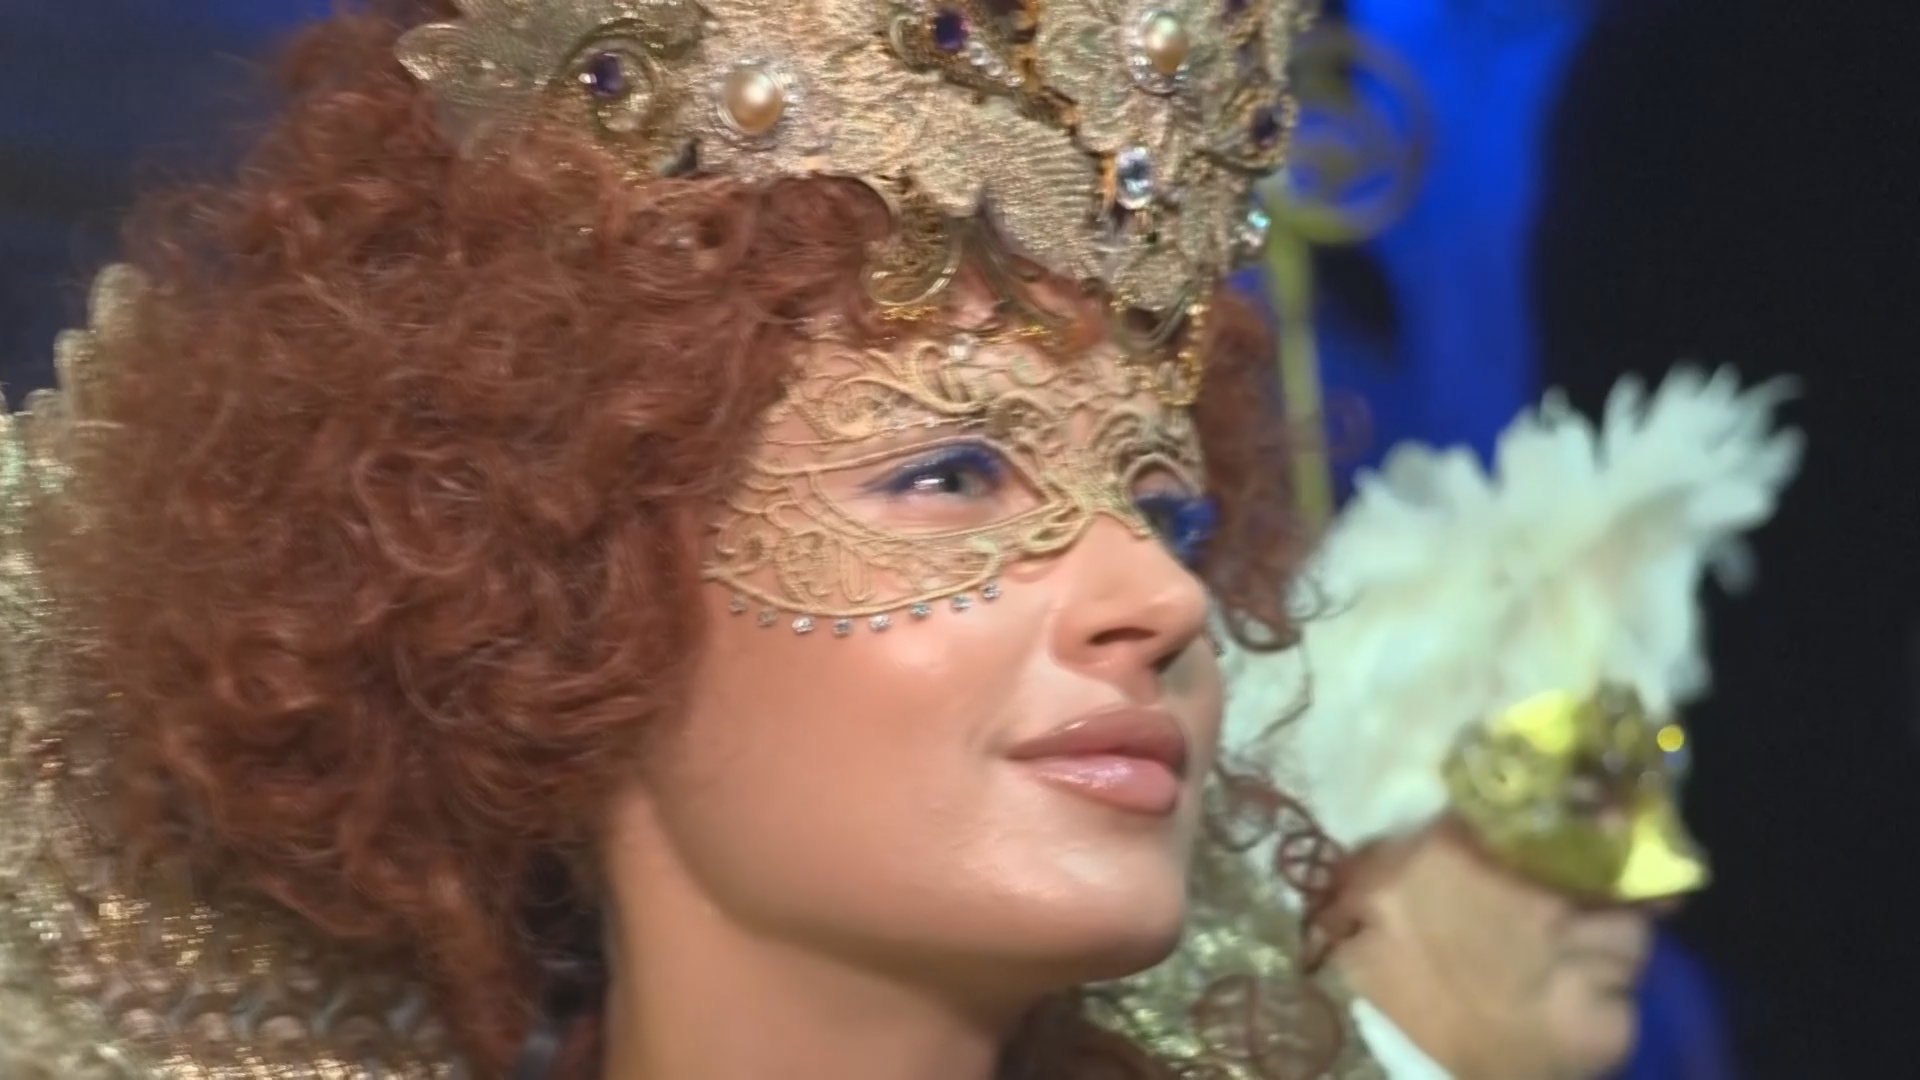 Роскошный бал-маскарад стал изюминкой Венецианского карнавала